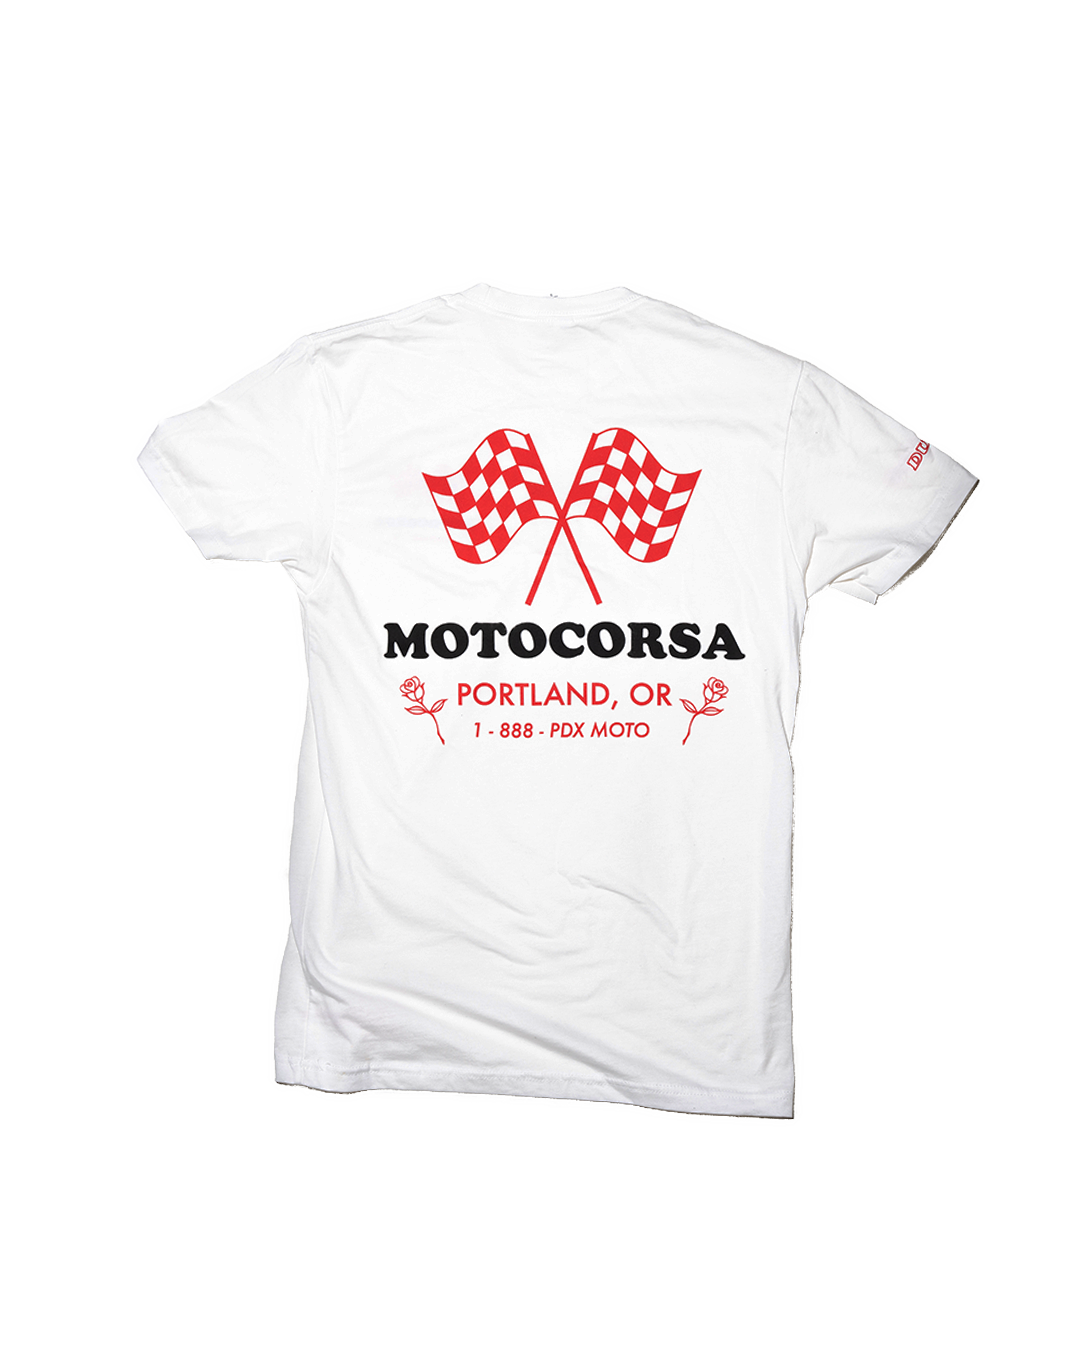 Motocorsa Checkered Tee - White